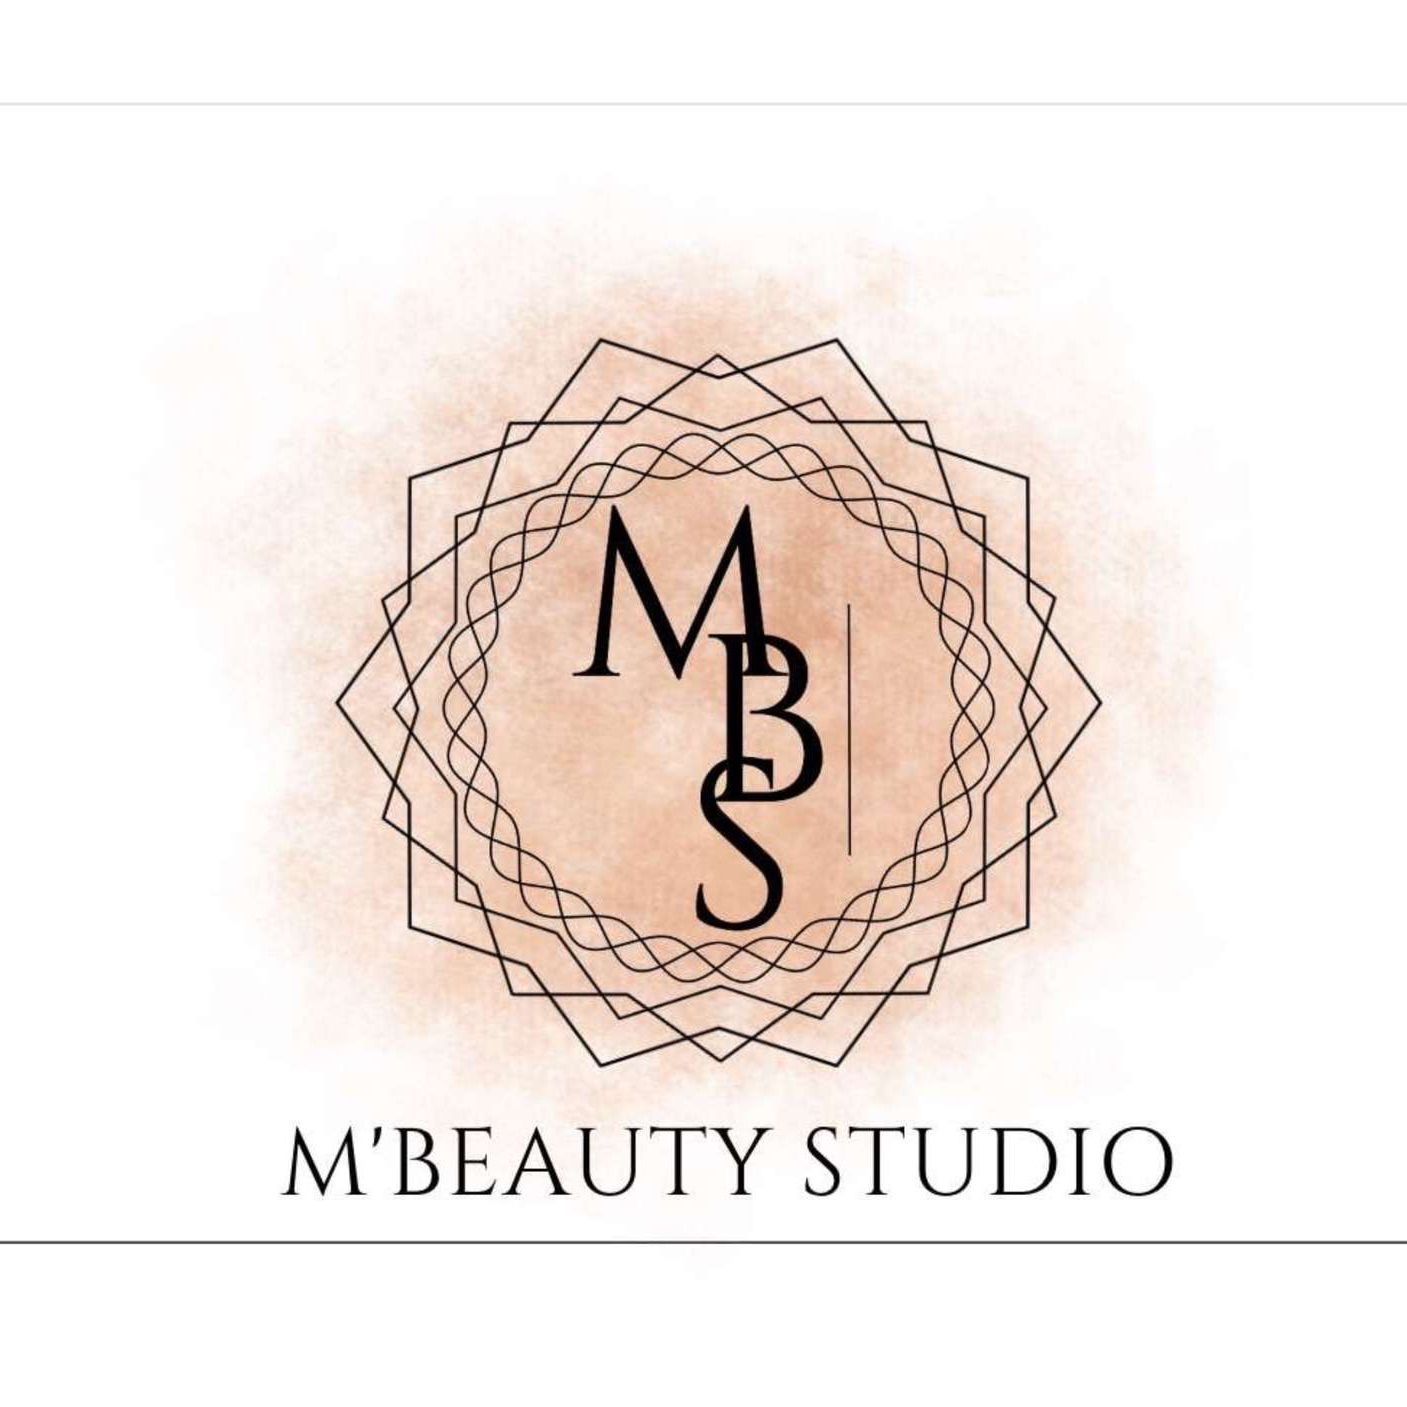 M’Beauty Studio, 15 Avenue François Bérenger, 06700, Saint-Laurent-du-Var